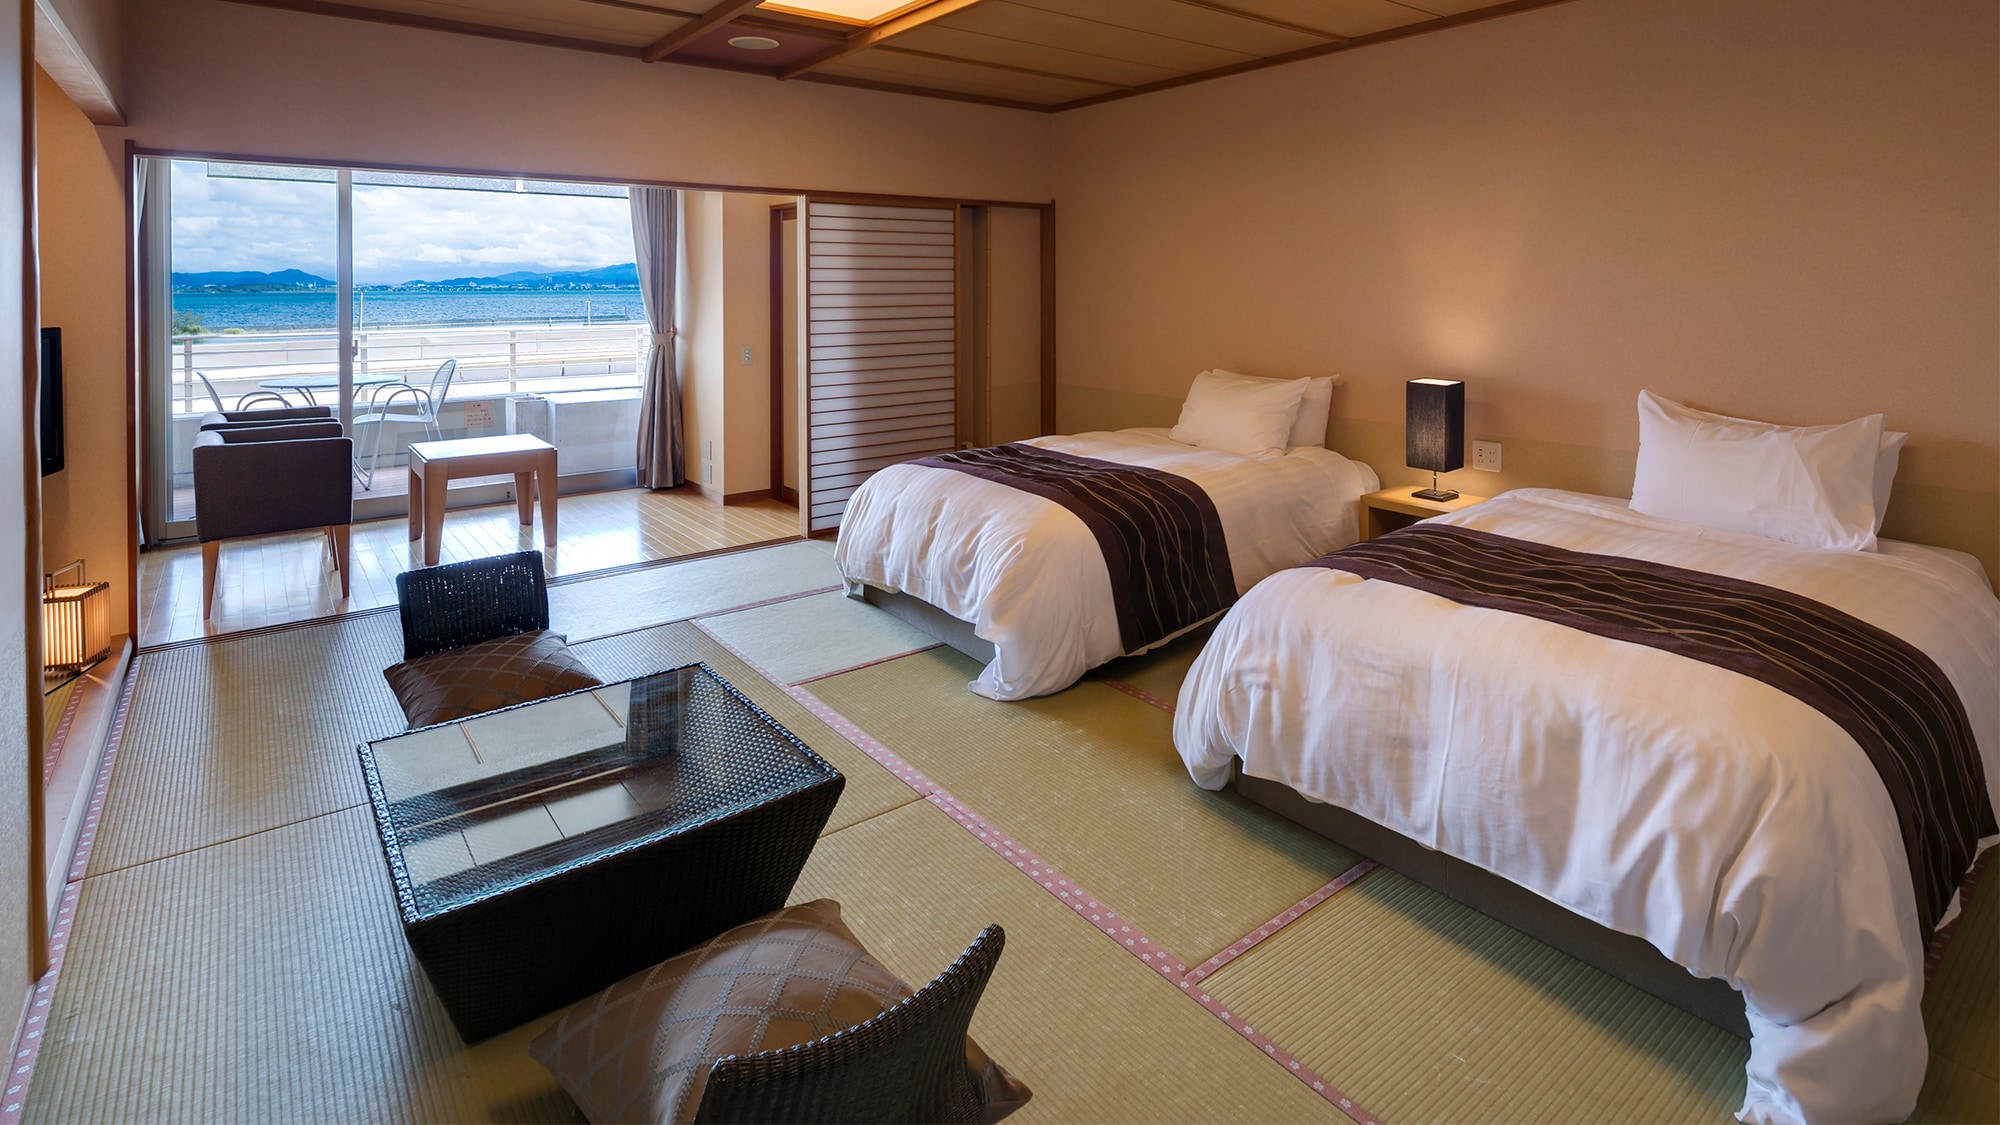 Seluruh kamar tipe cypress kembar gaya Jepang